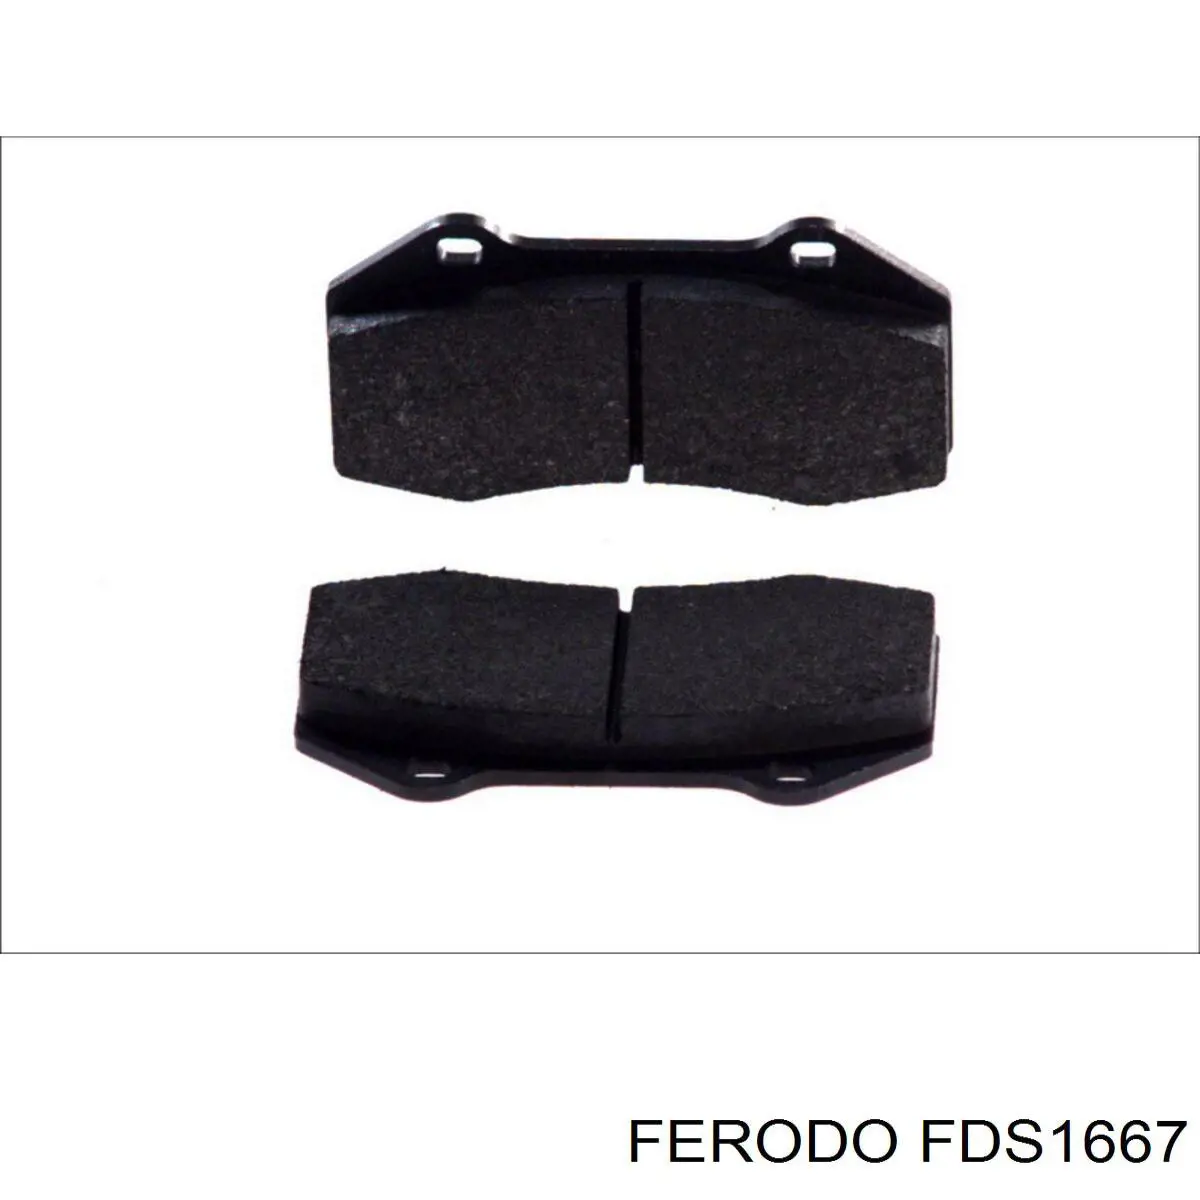 FDS1667 Ferodo pastillas de freno delanteras